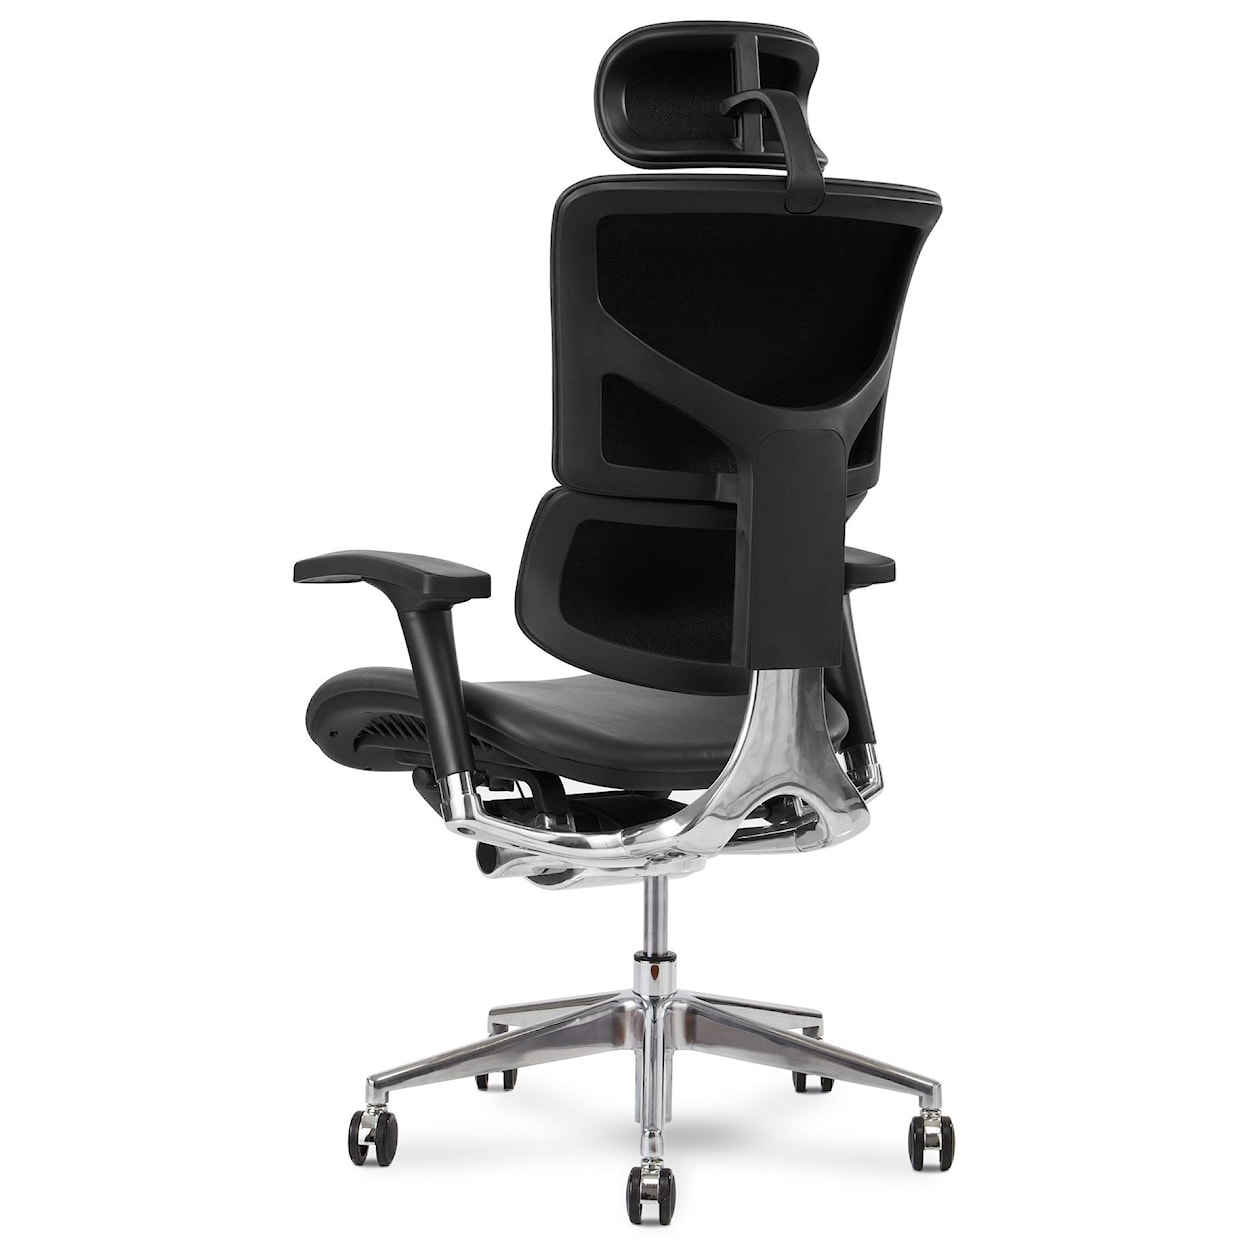 X-Chair X4 Executive Chair